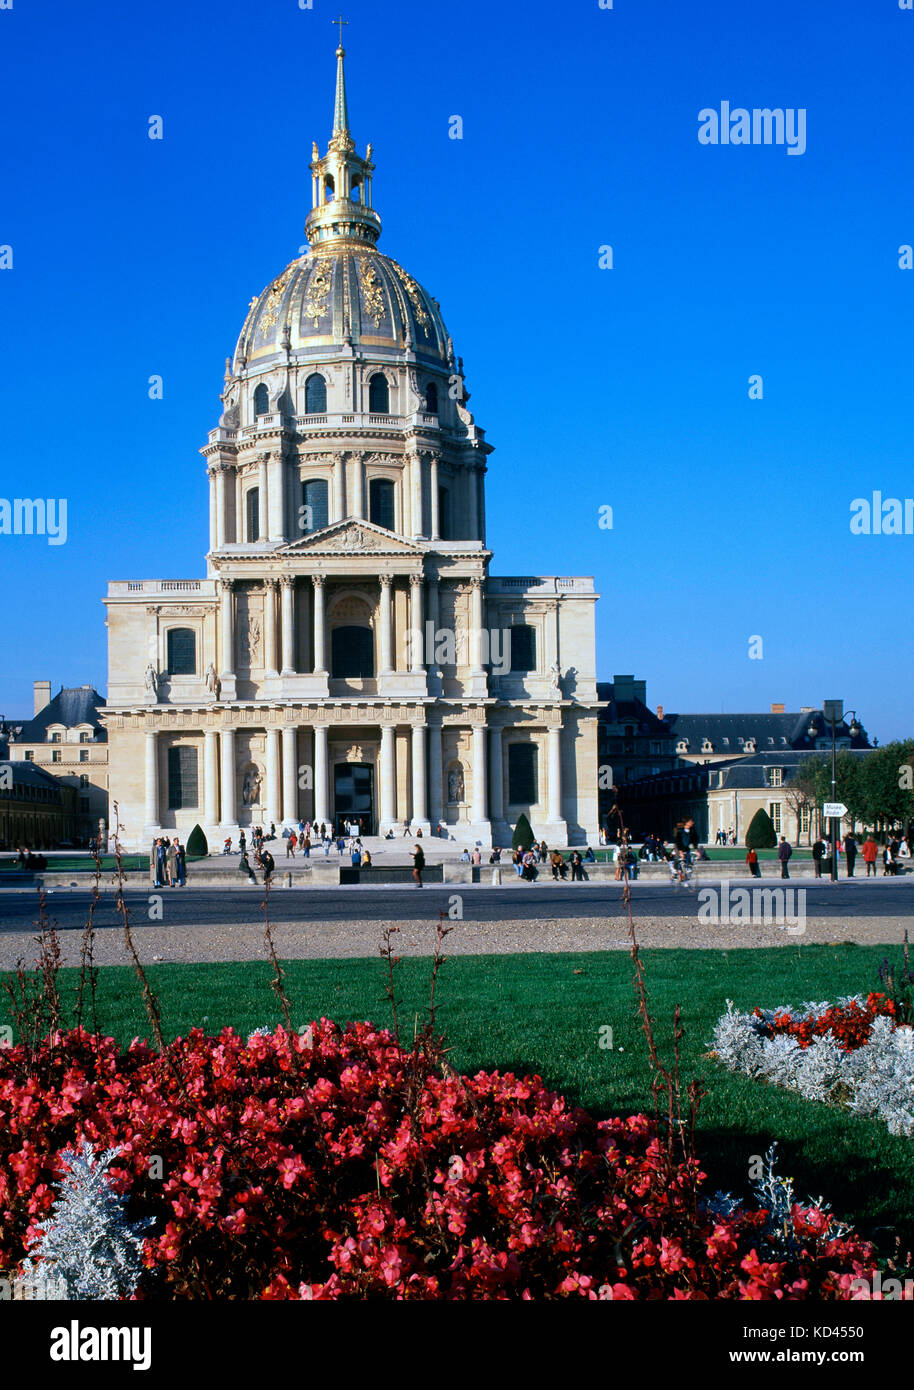 L'hôtel des invalides, Paris, France Banque D'Images